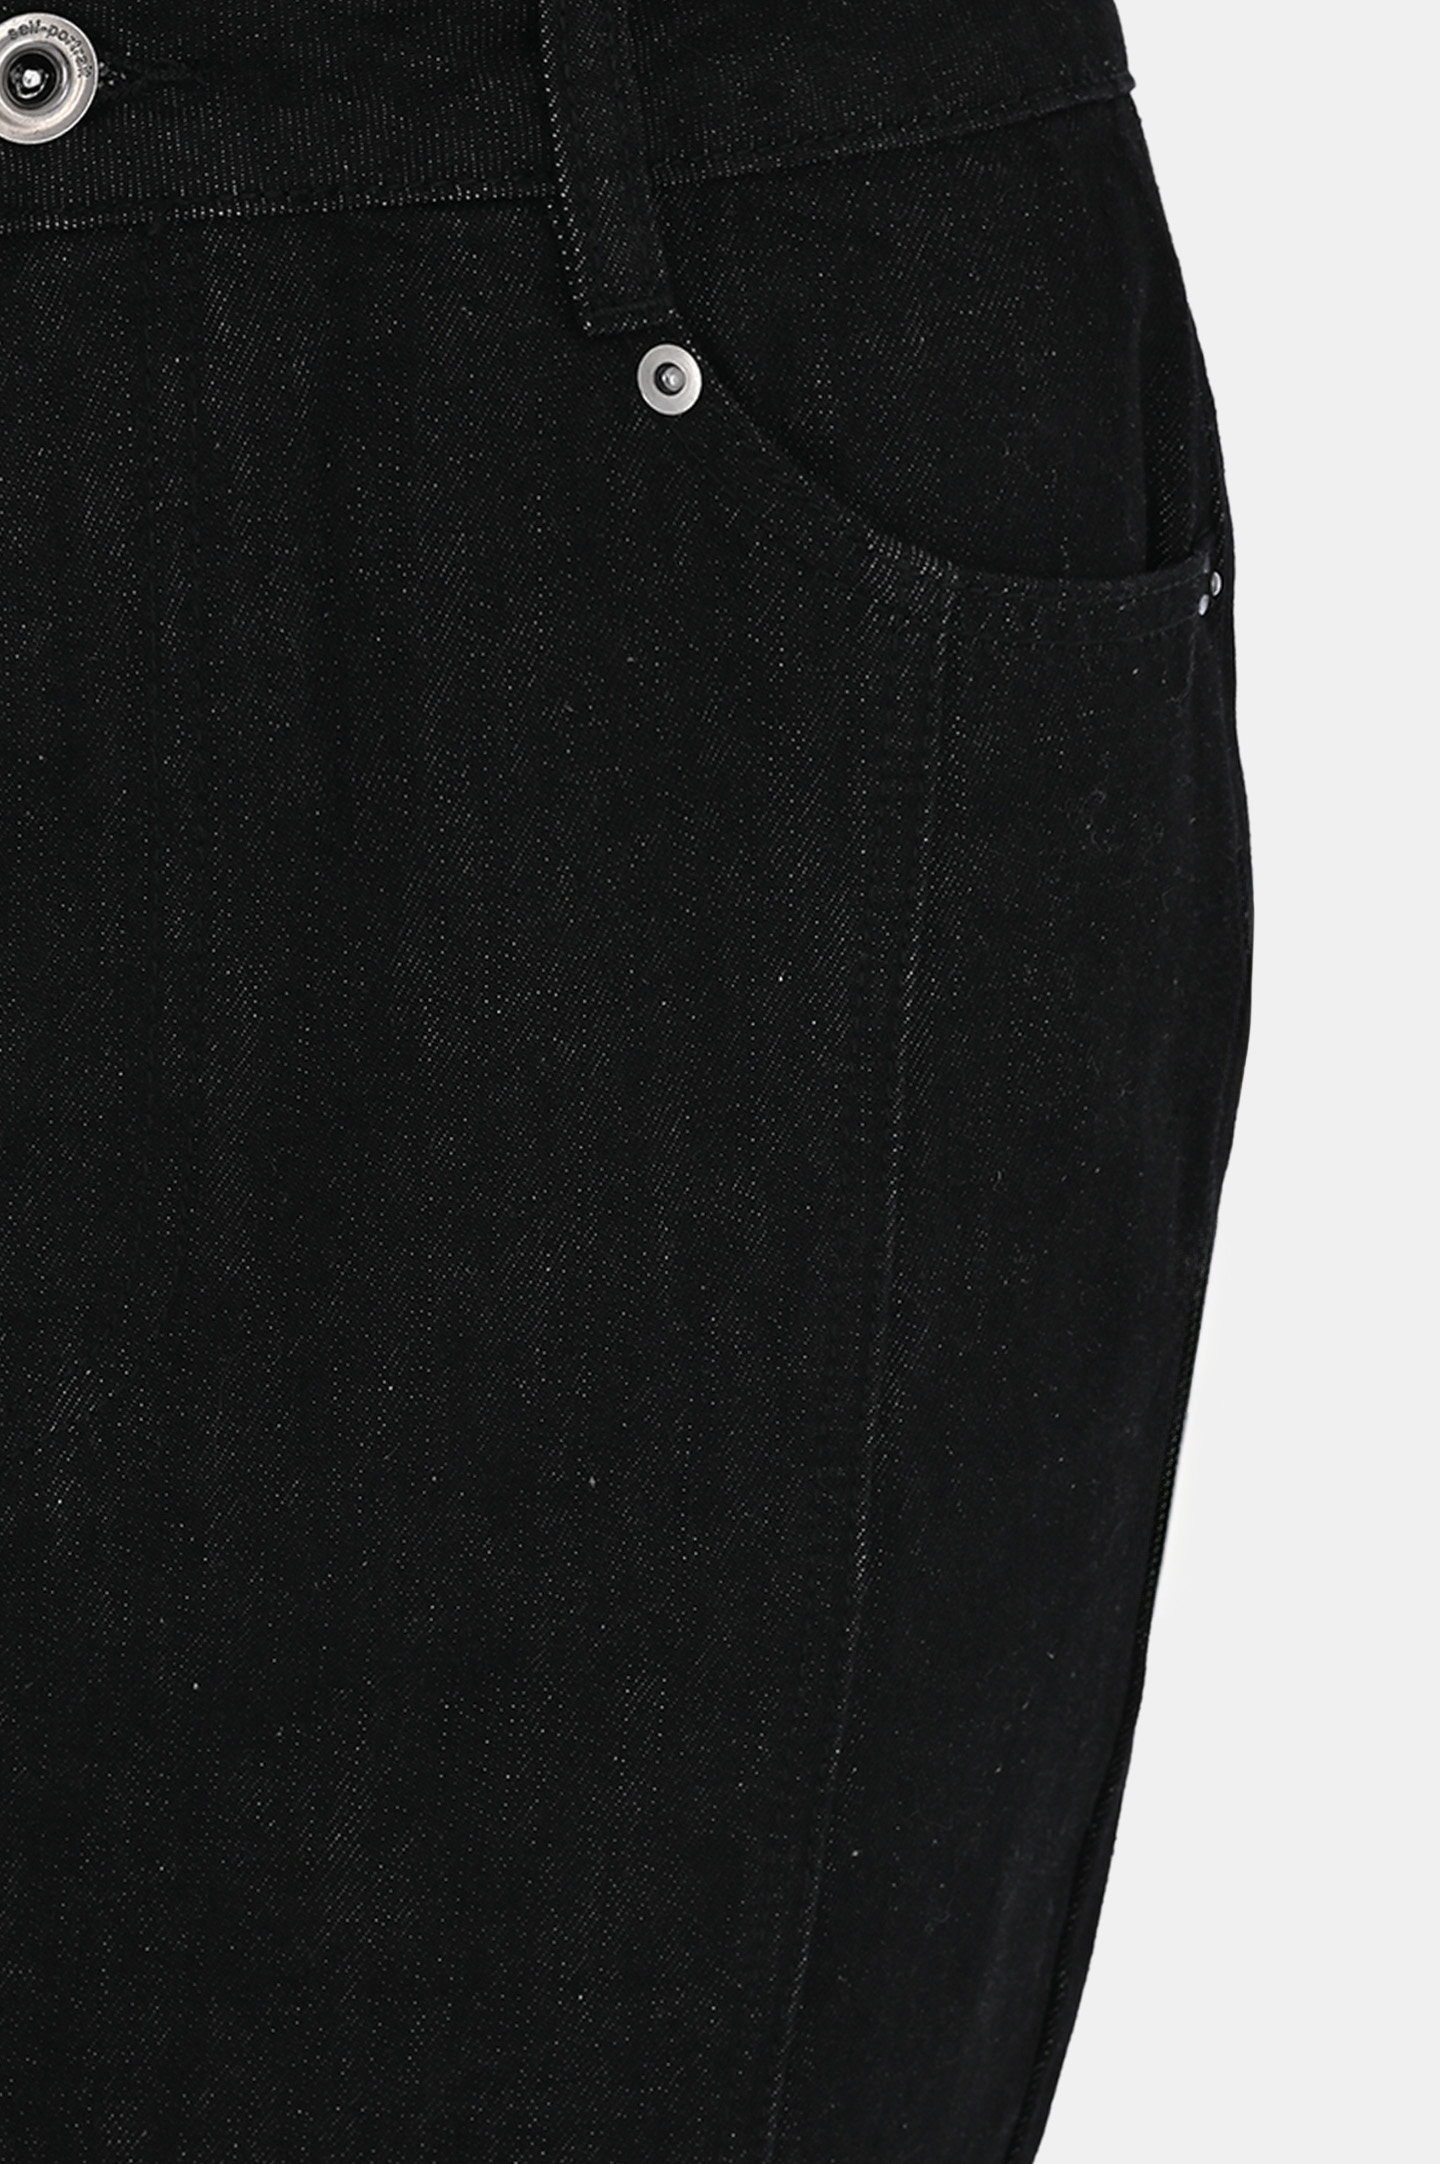 Джинсовая юбка с карманами SELF PORTRAIT RS24815XSKB, цвет: Черный, Женский